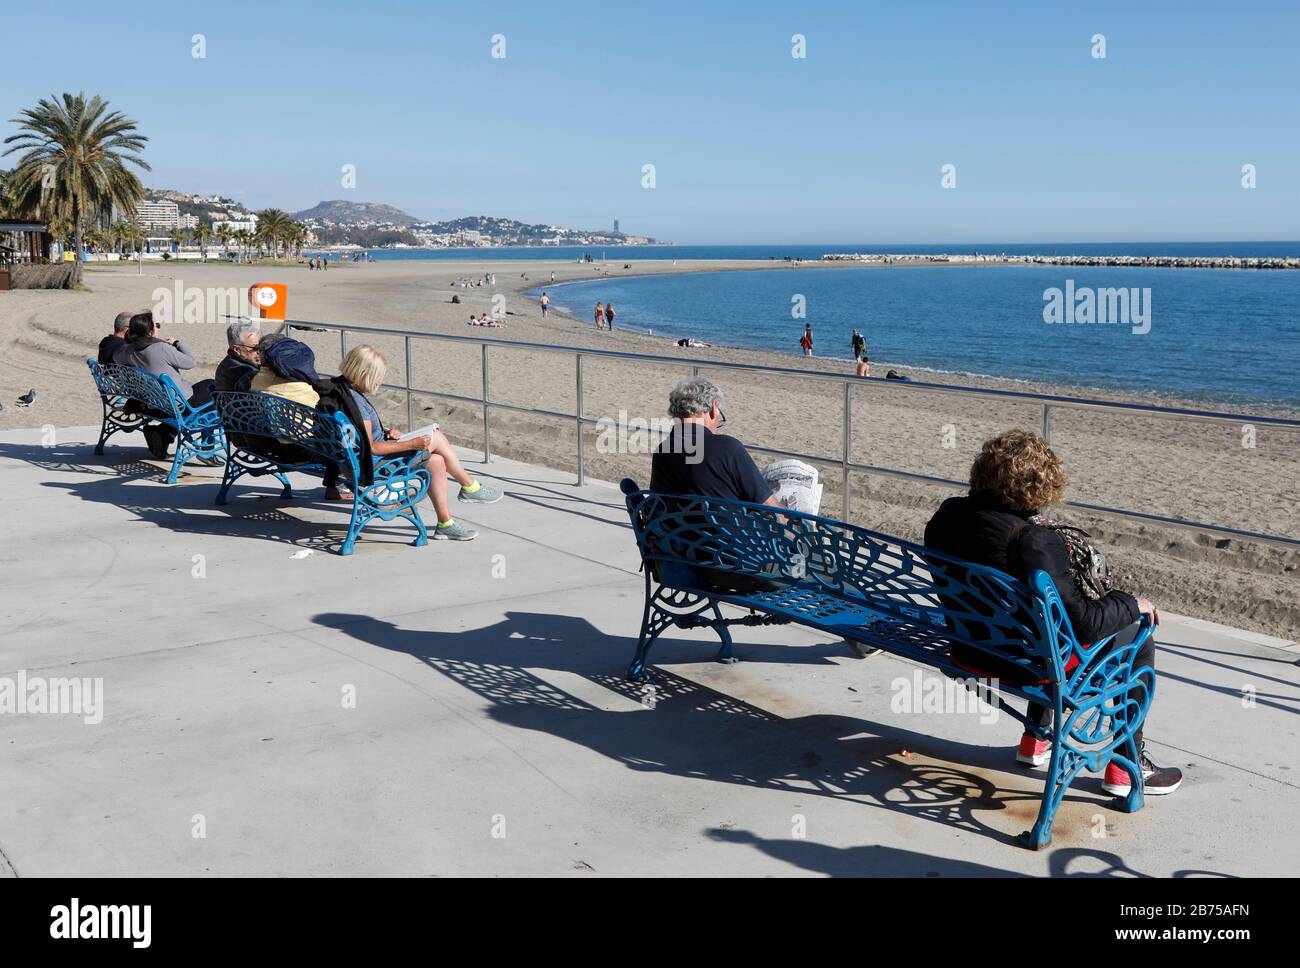 Les personnes âgées s'assoient sur des bancs sur la plage de Malaga, de 'Malagueta', en Espagne, et profitent des températures printanières sur la Costa del sol, 11.02.2019. [traduction automatique] Banque D'Images